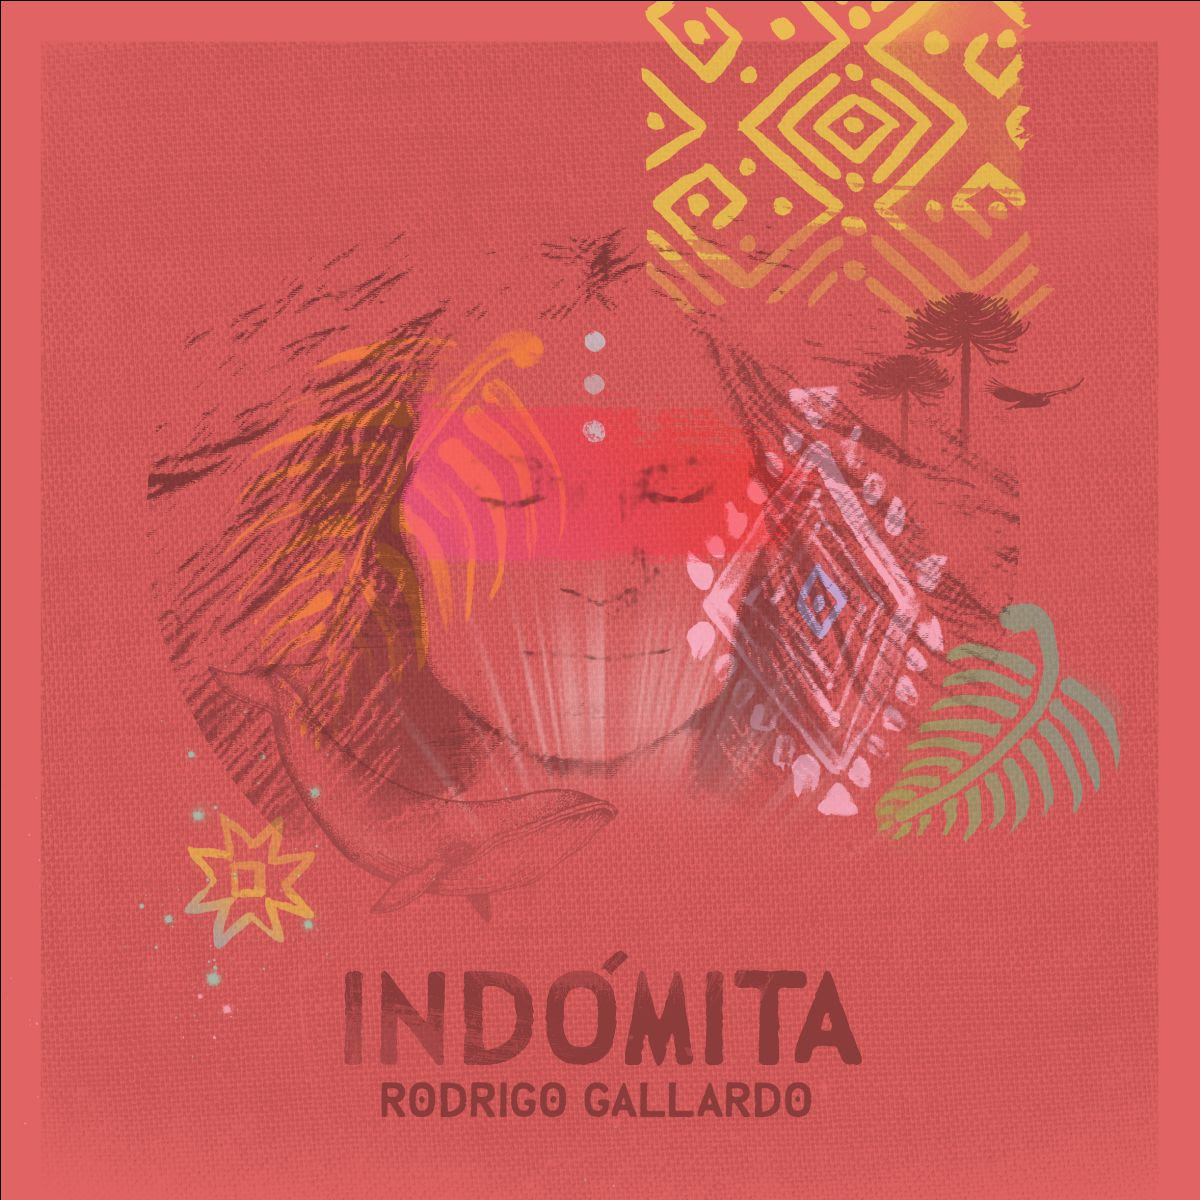  Conoce el nuevo disco de Rodrigo Gallardo